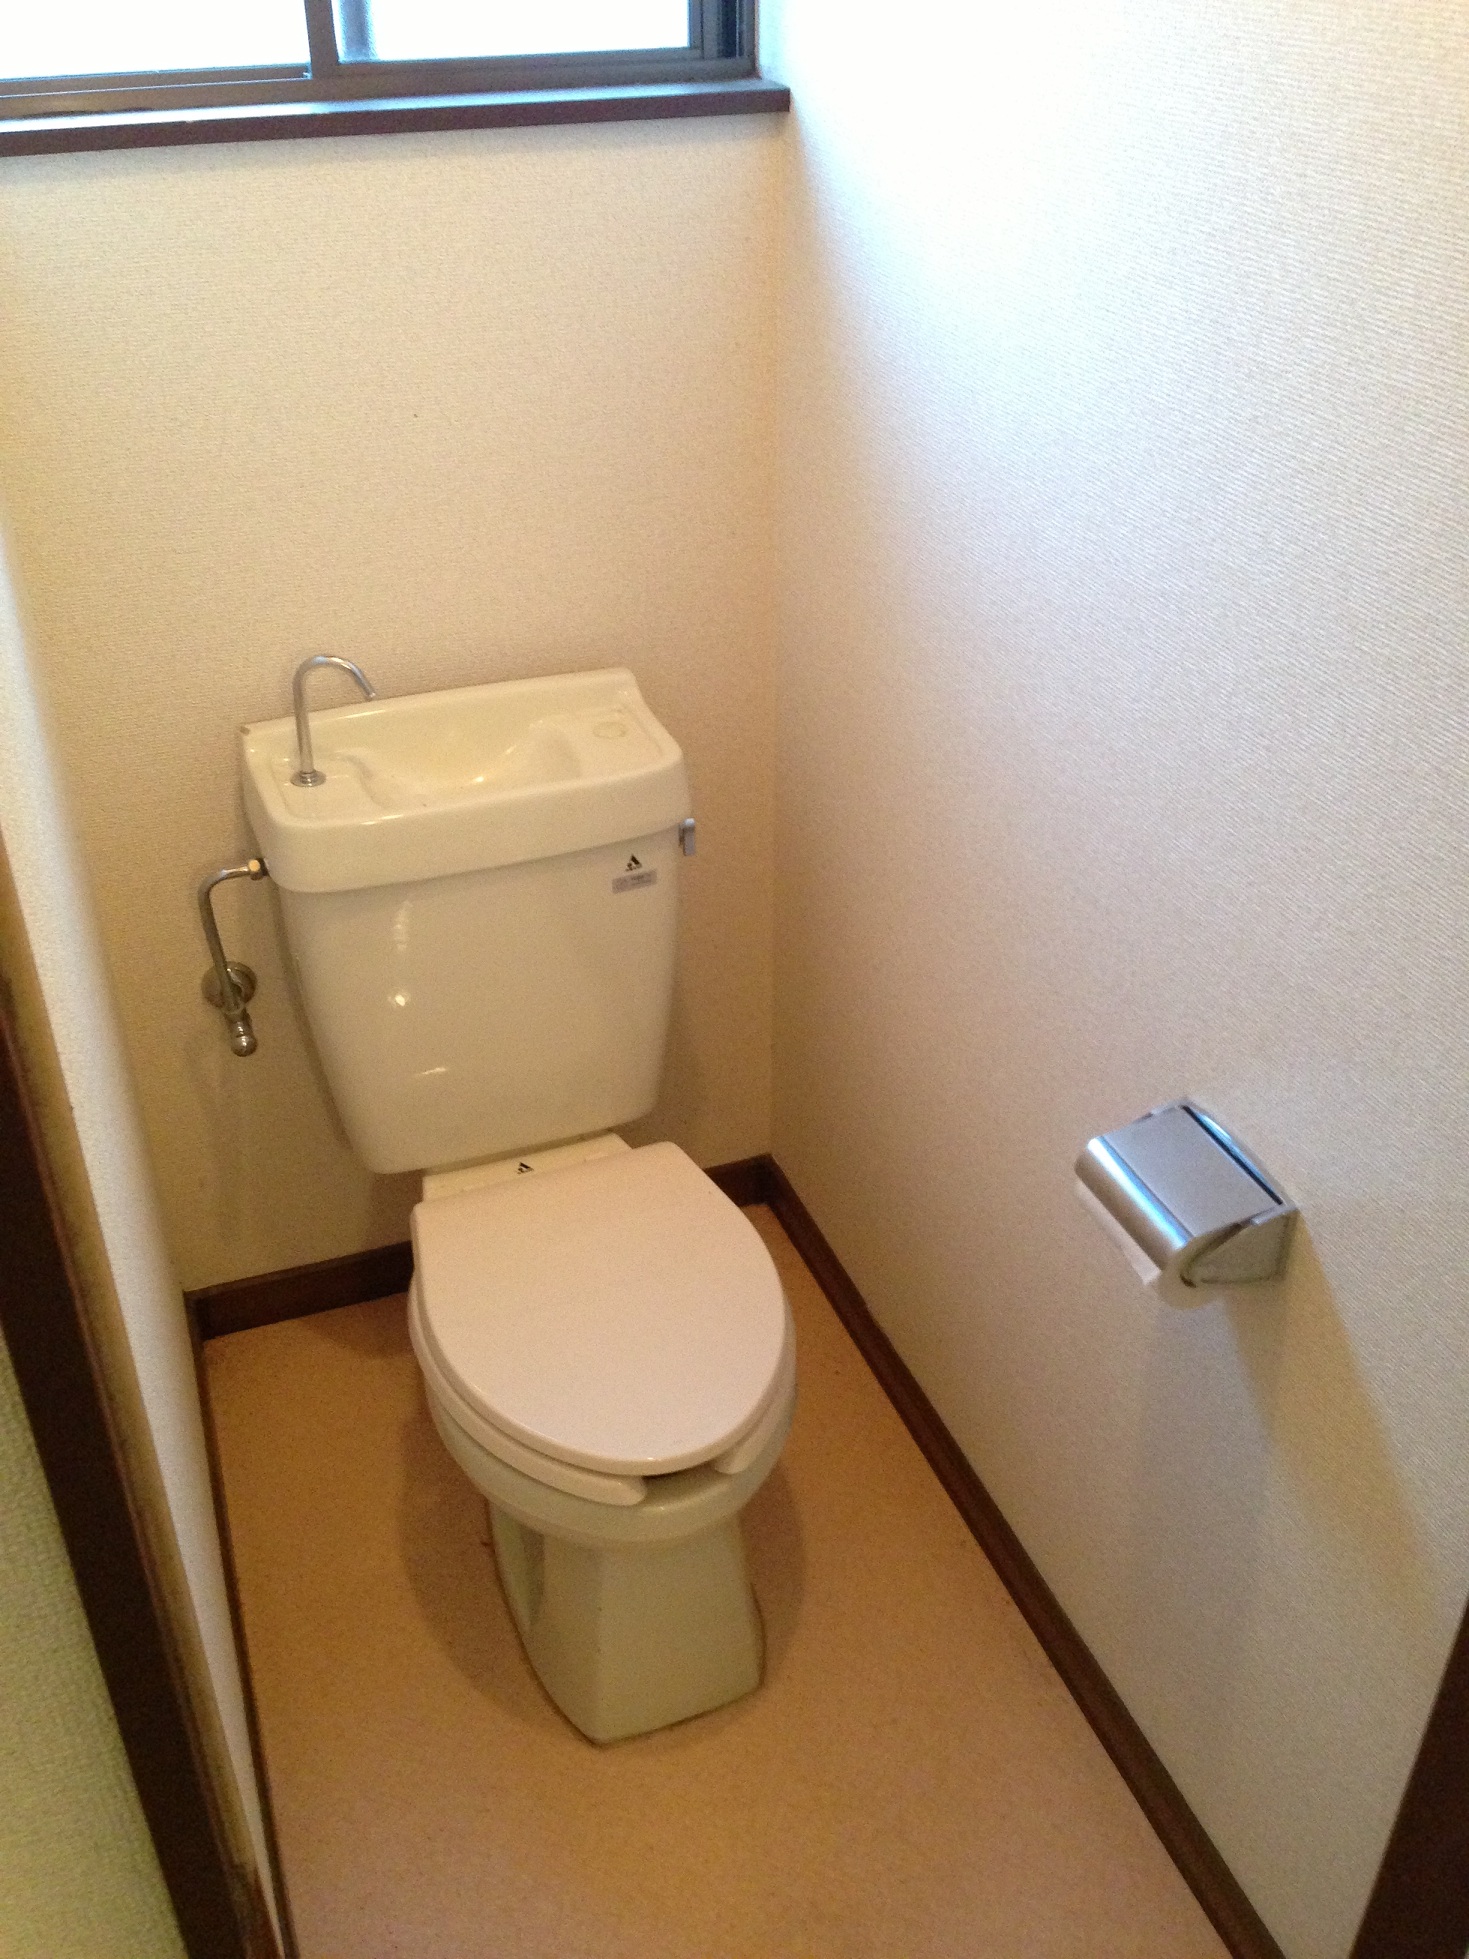 Toilet. Change to the bidet